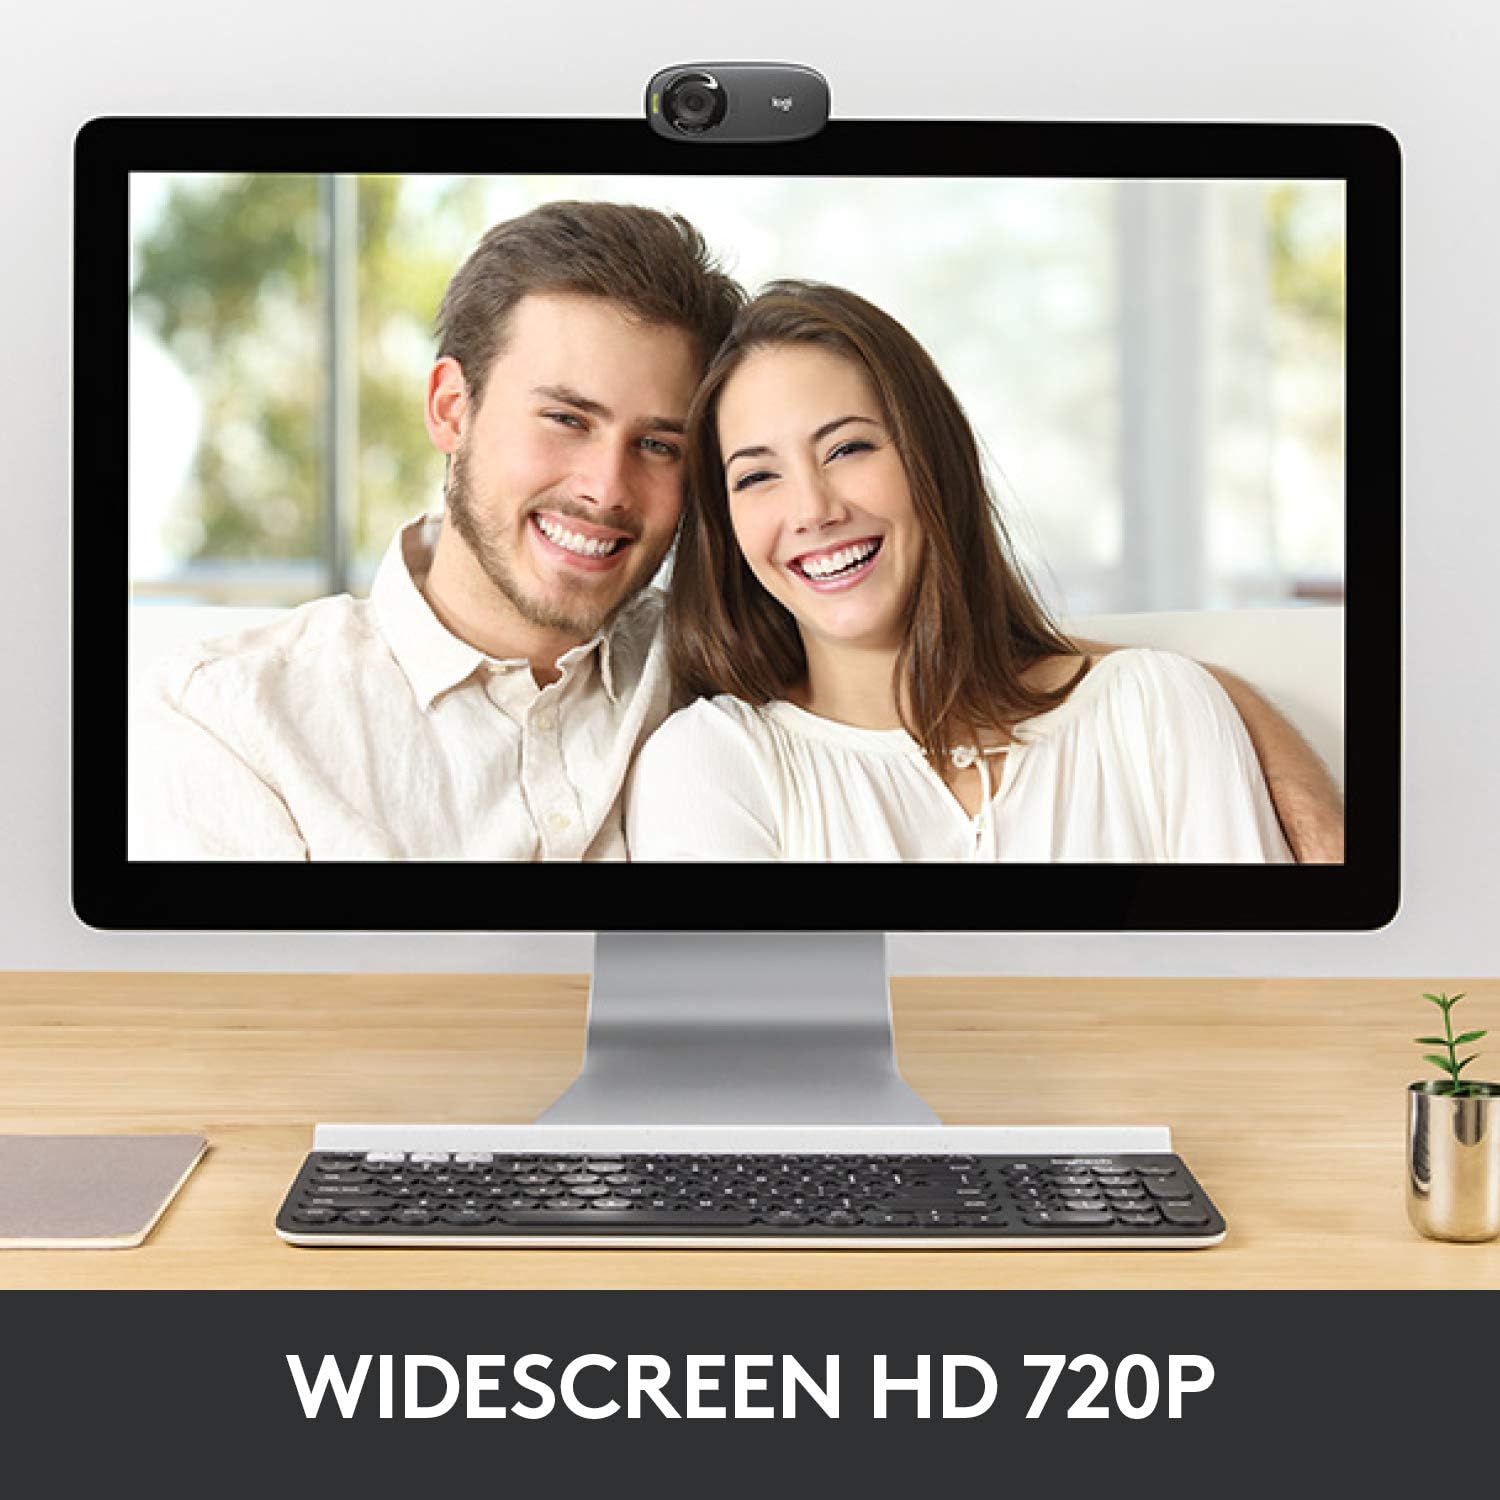 وب کم HD لاجیتک C310، کاهش نویز، تصویر ویدئویی عریض، رزلوشن 720P، تنظیم نور خودکار